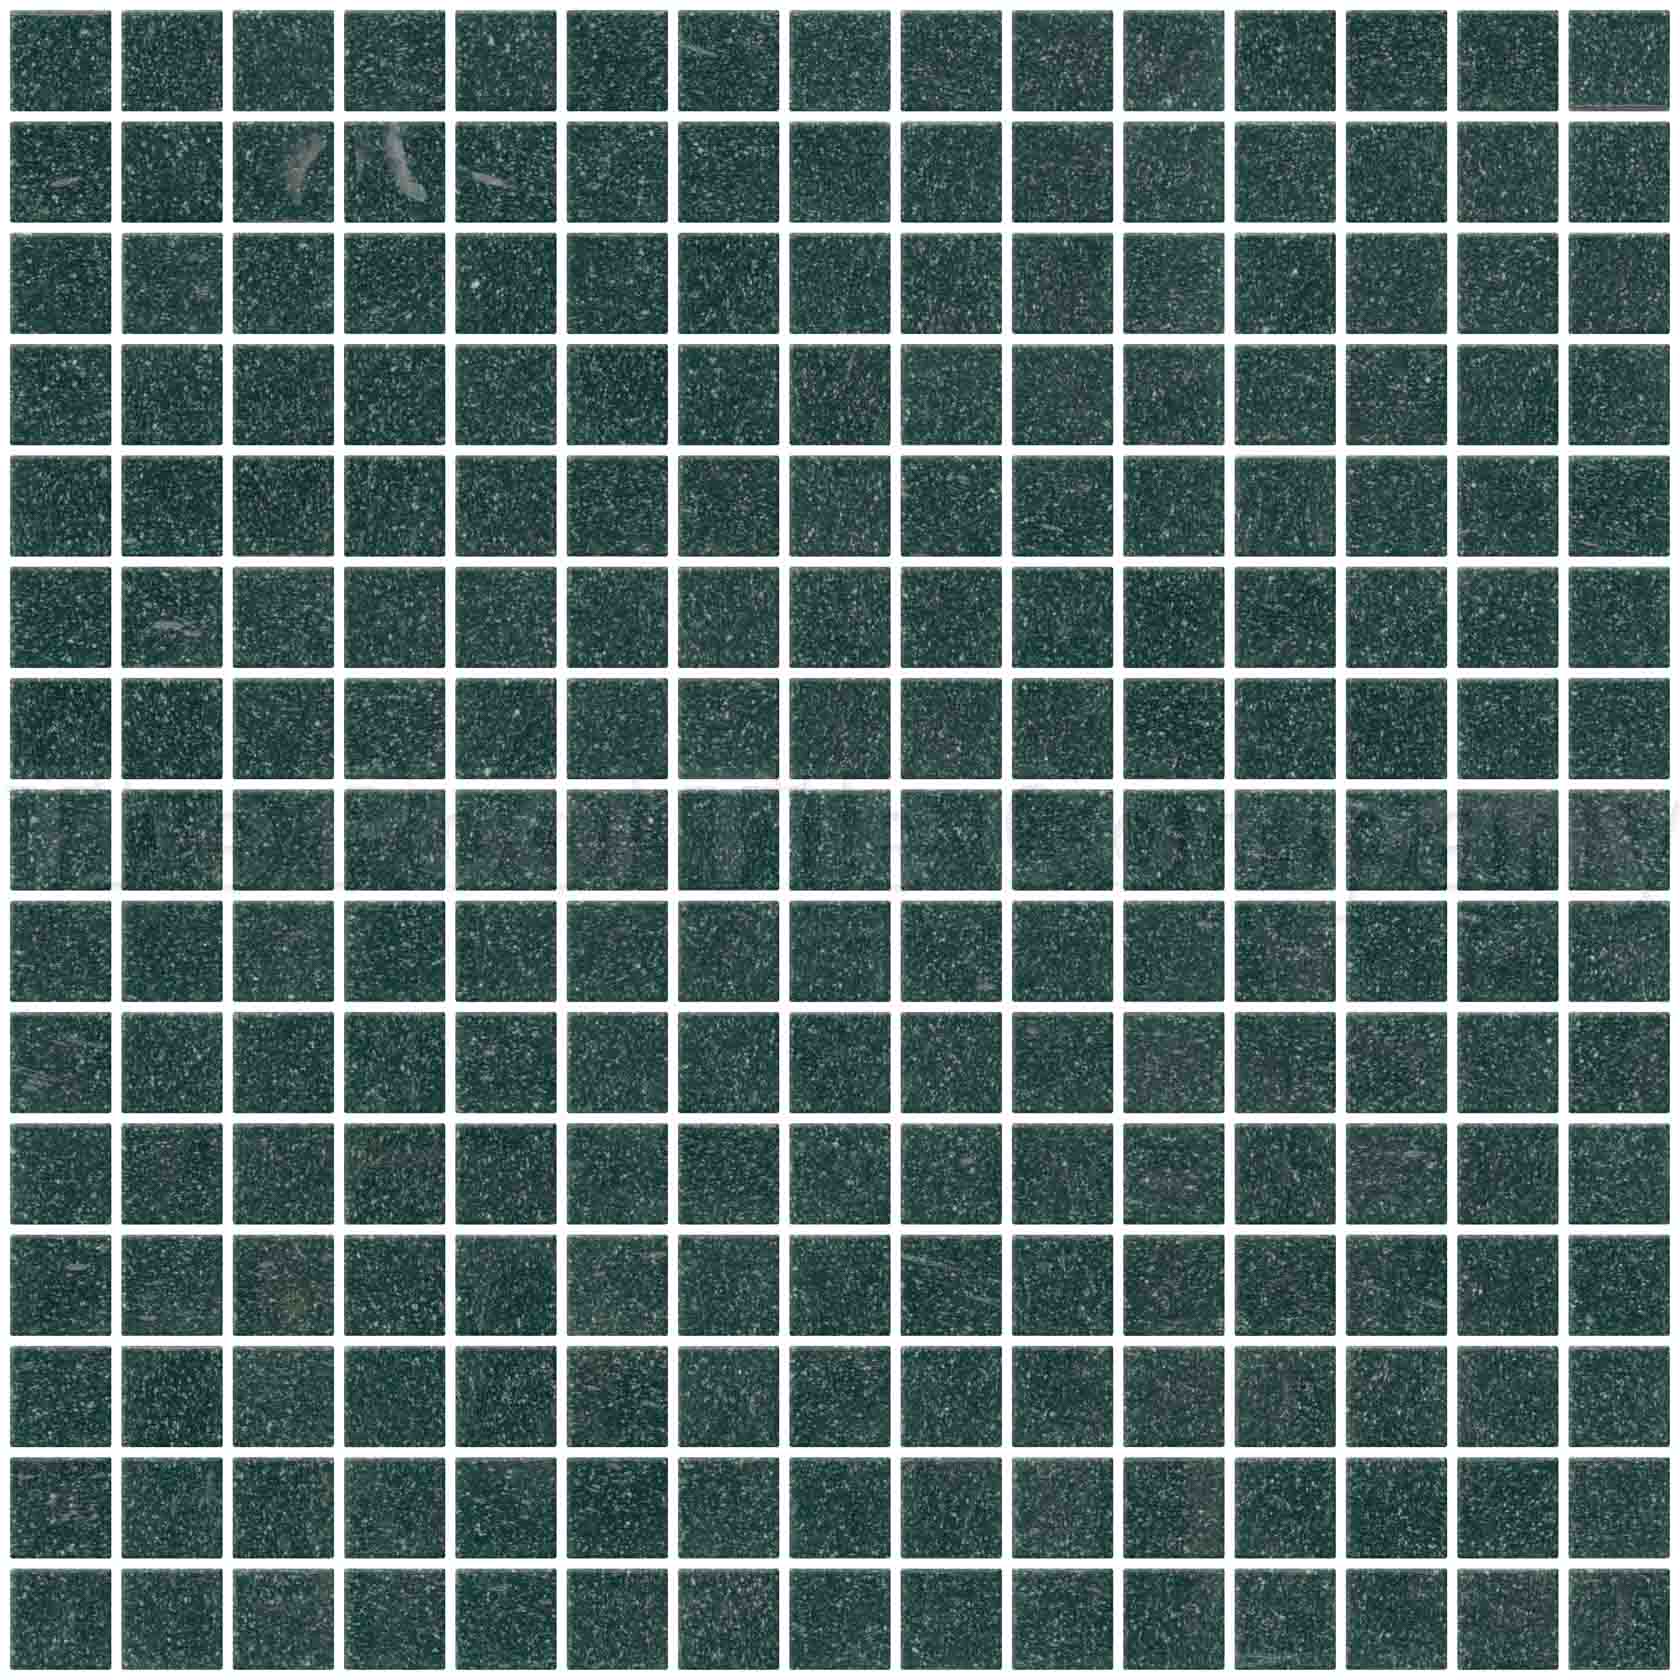 GC225 forest green 20mm glass mosaic tile sheet